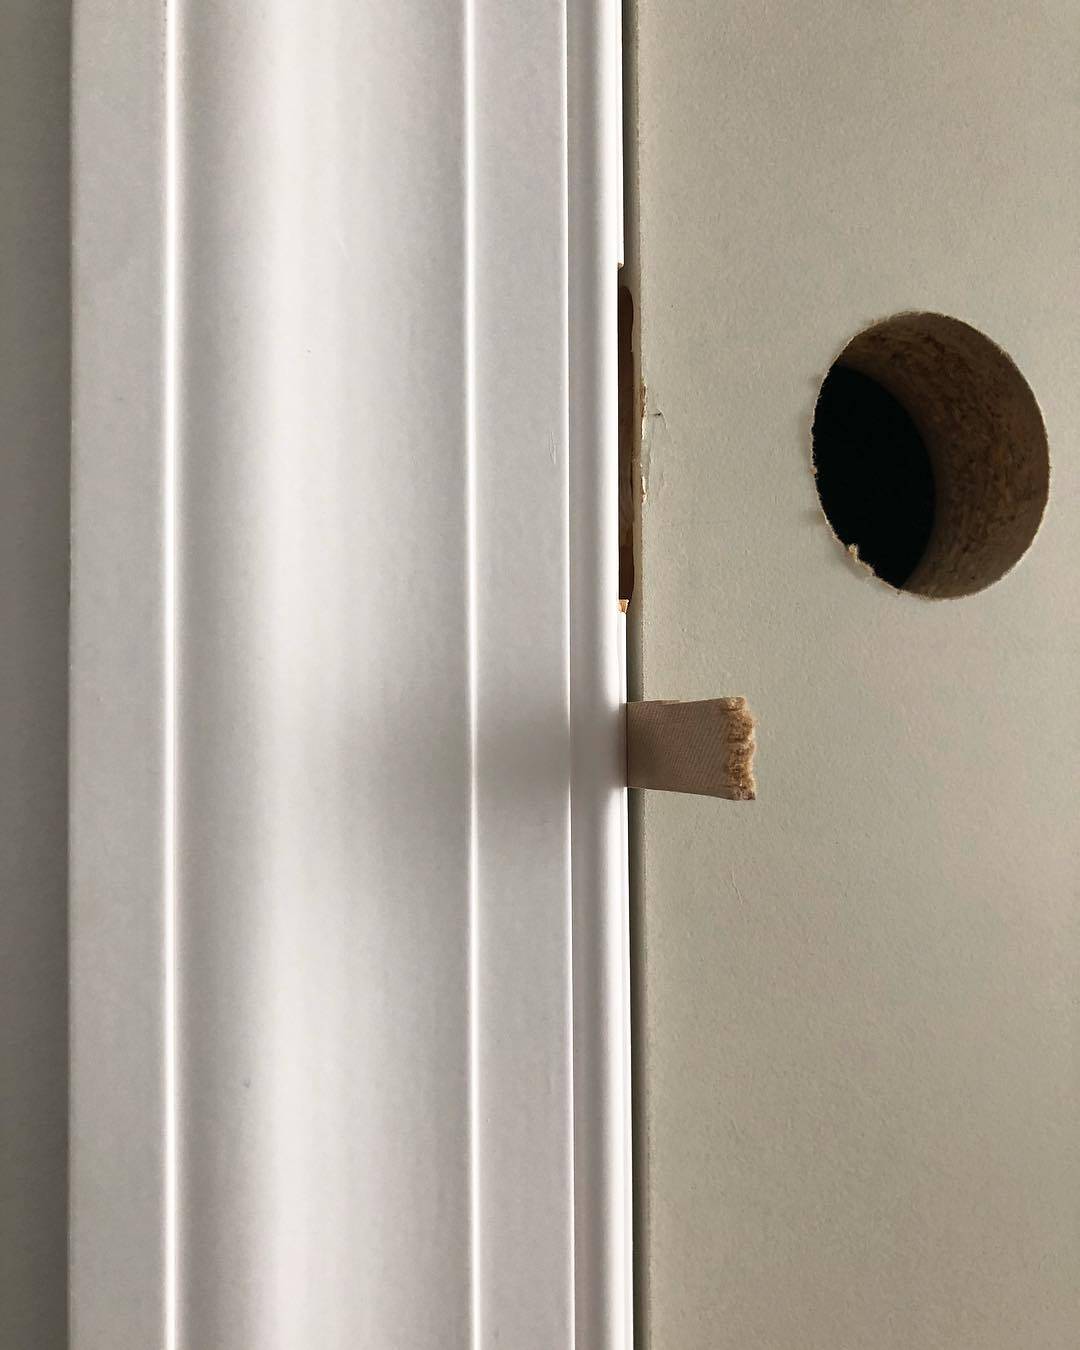 How do I remove my old door jamb